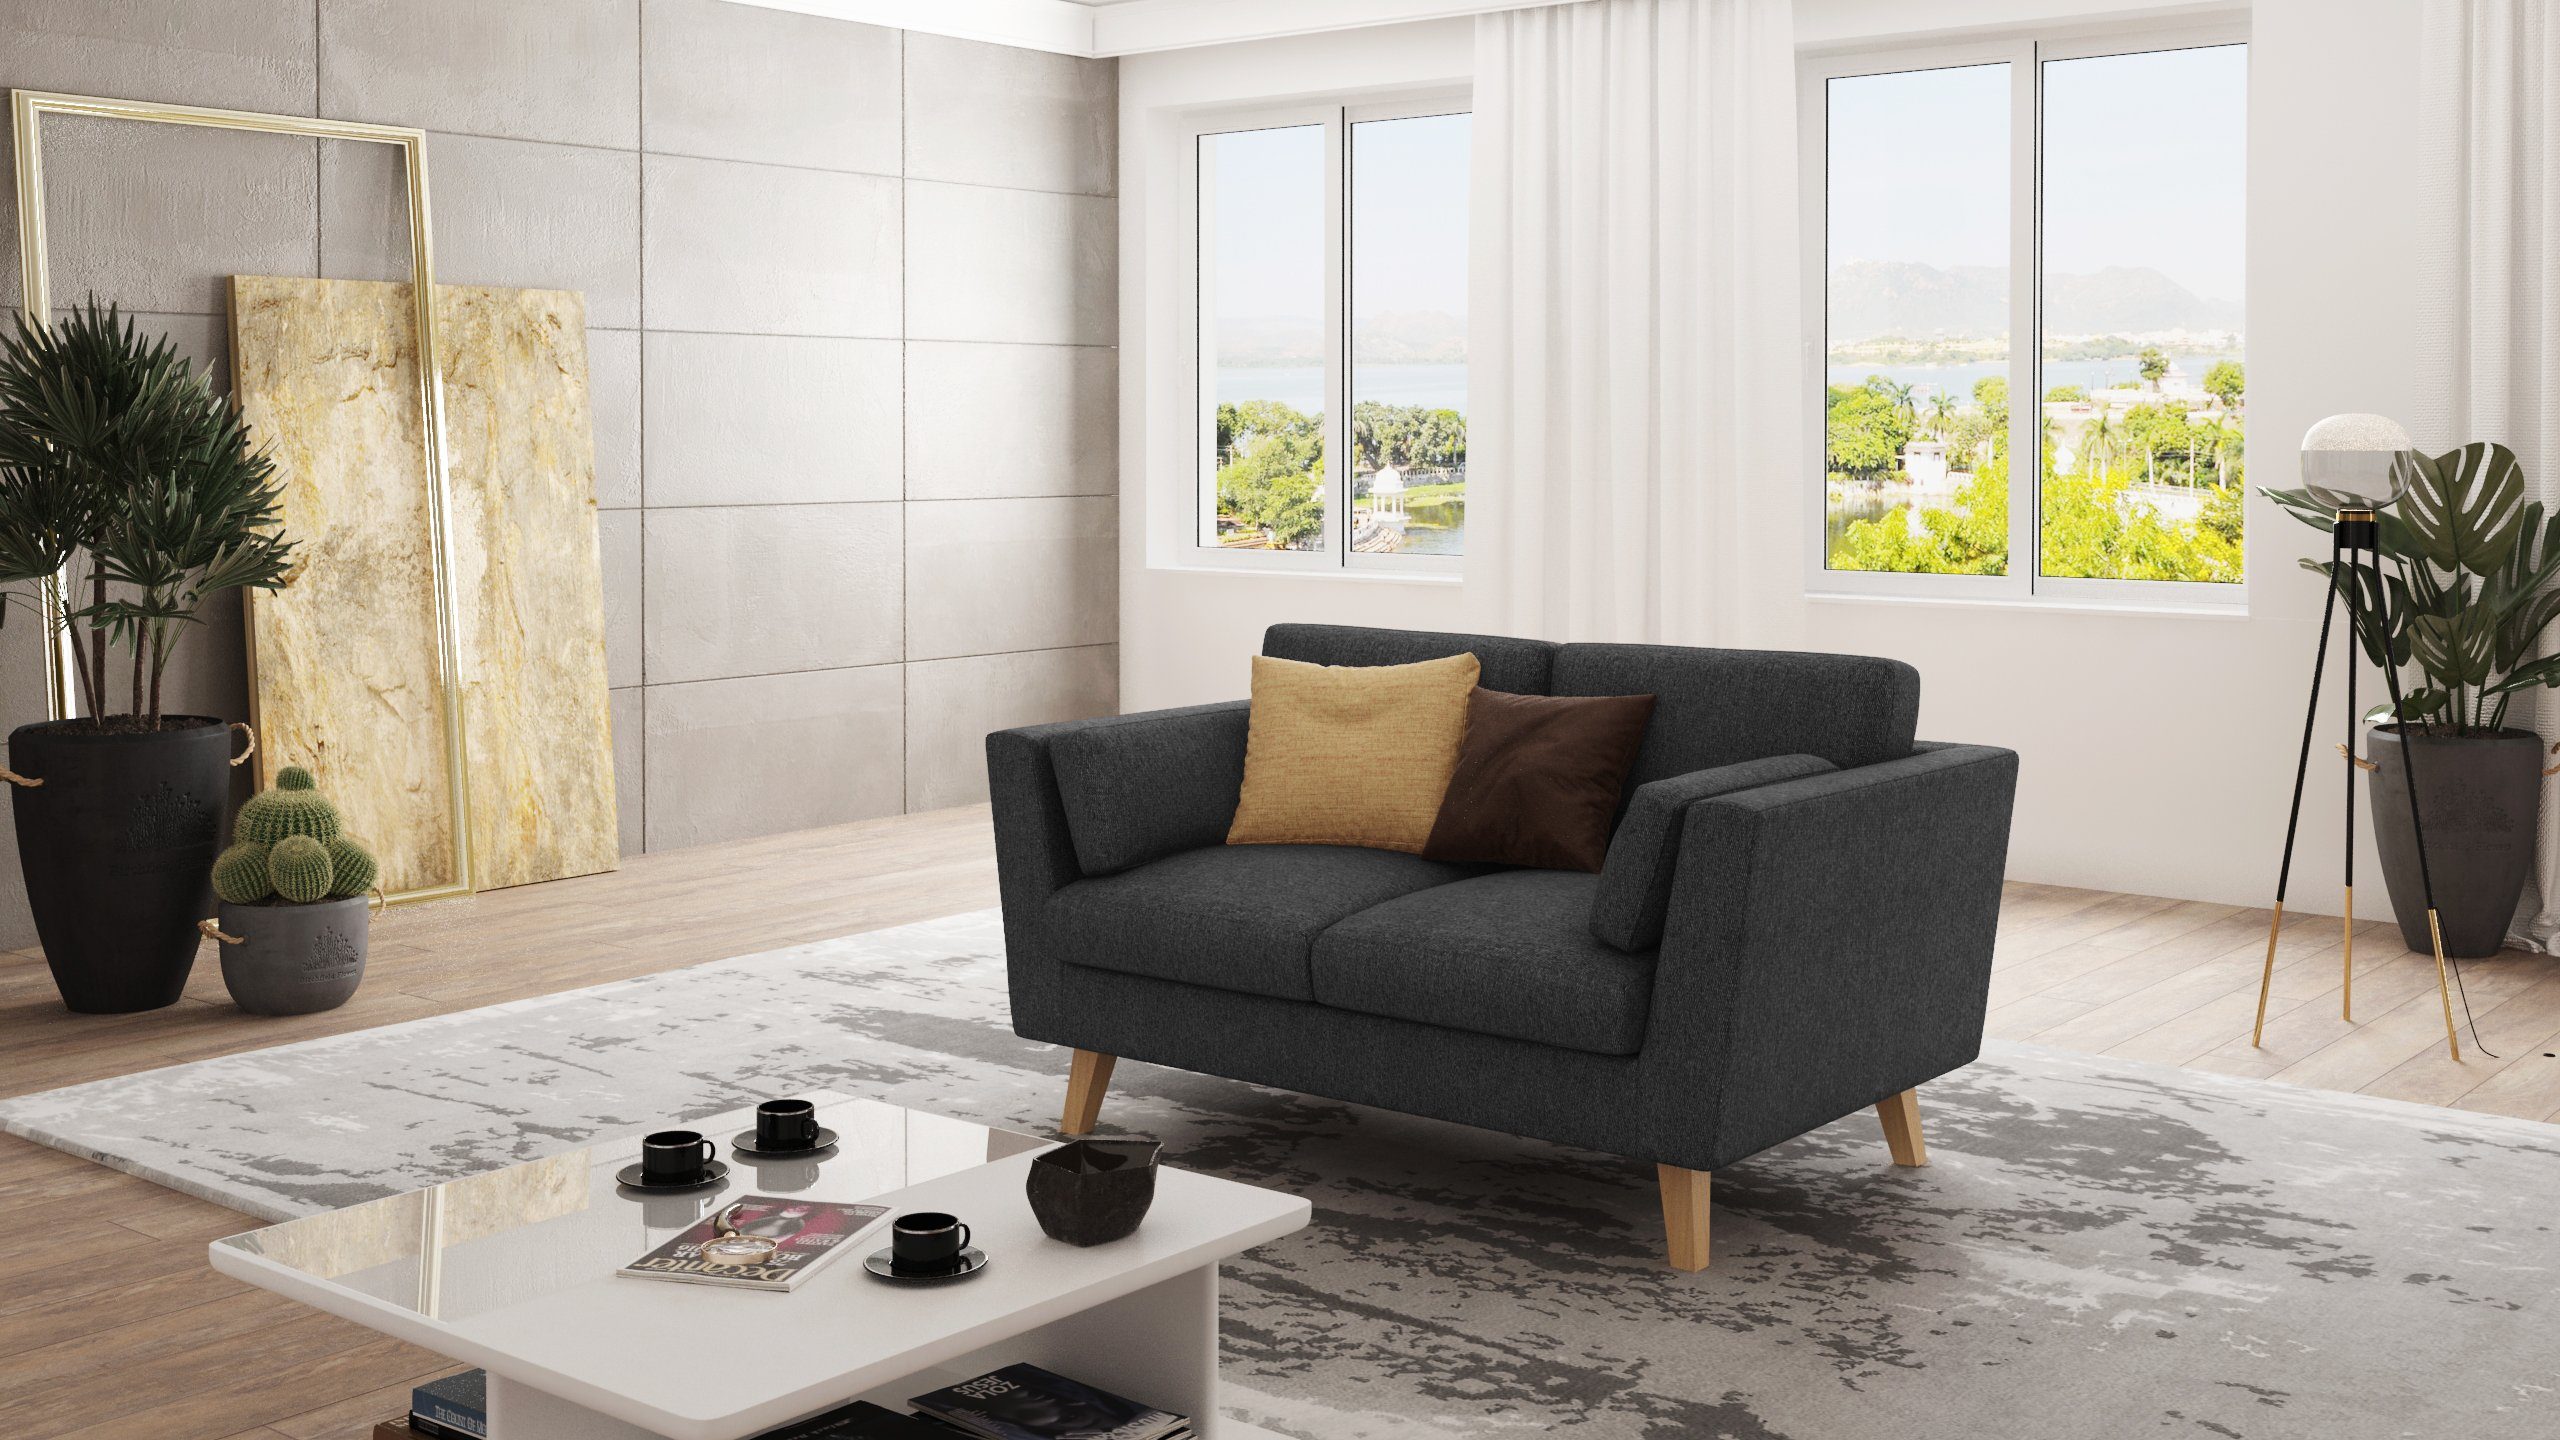 Angeles im Graphit mit skandinavischen S-Style Wellenfederung Sofa Design, 2-Sitzer Möbel